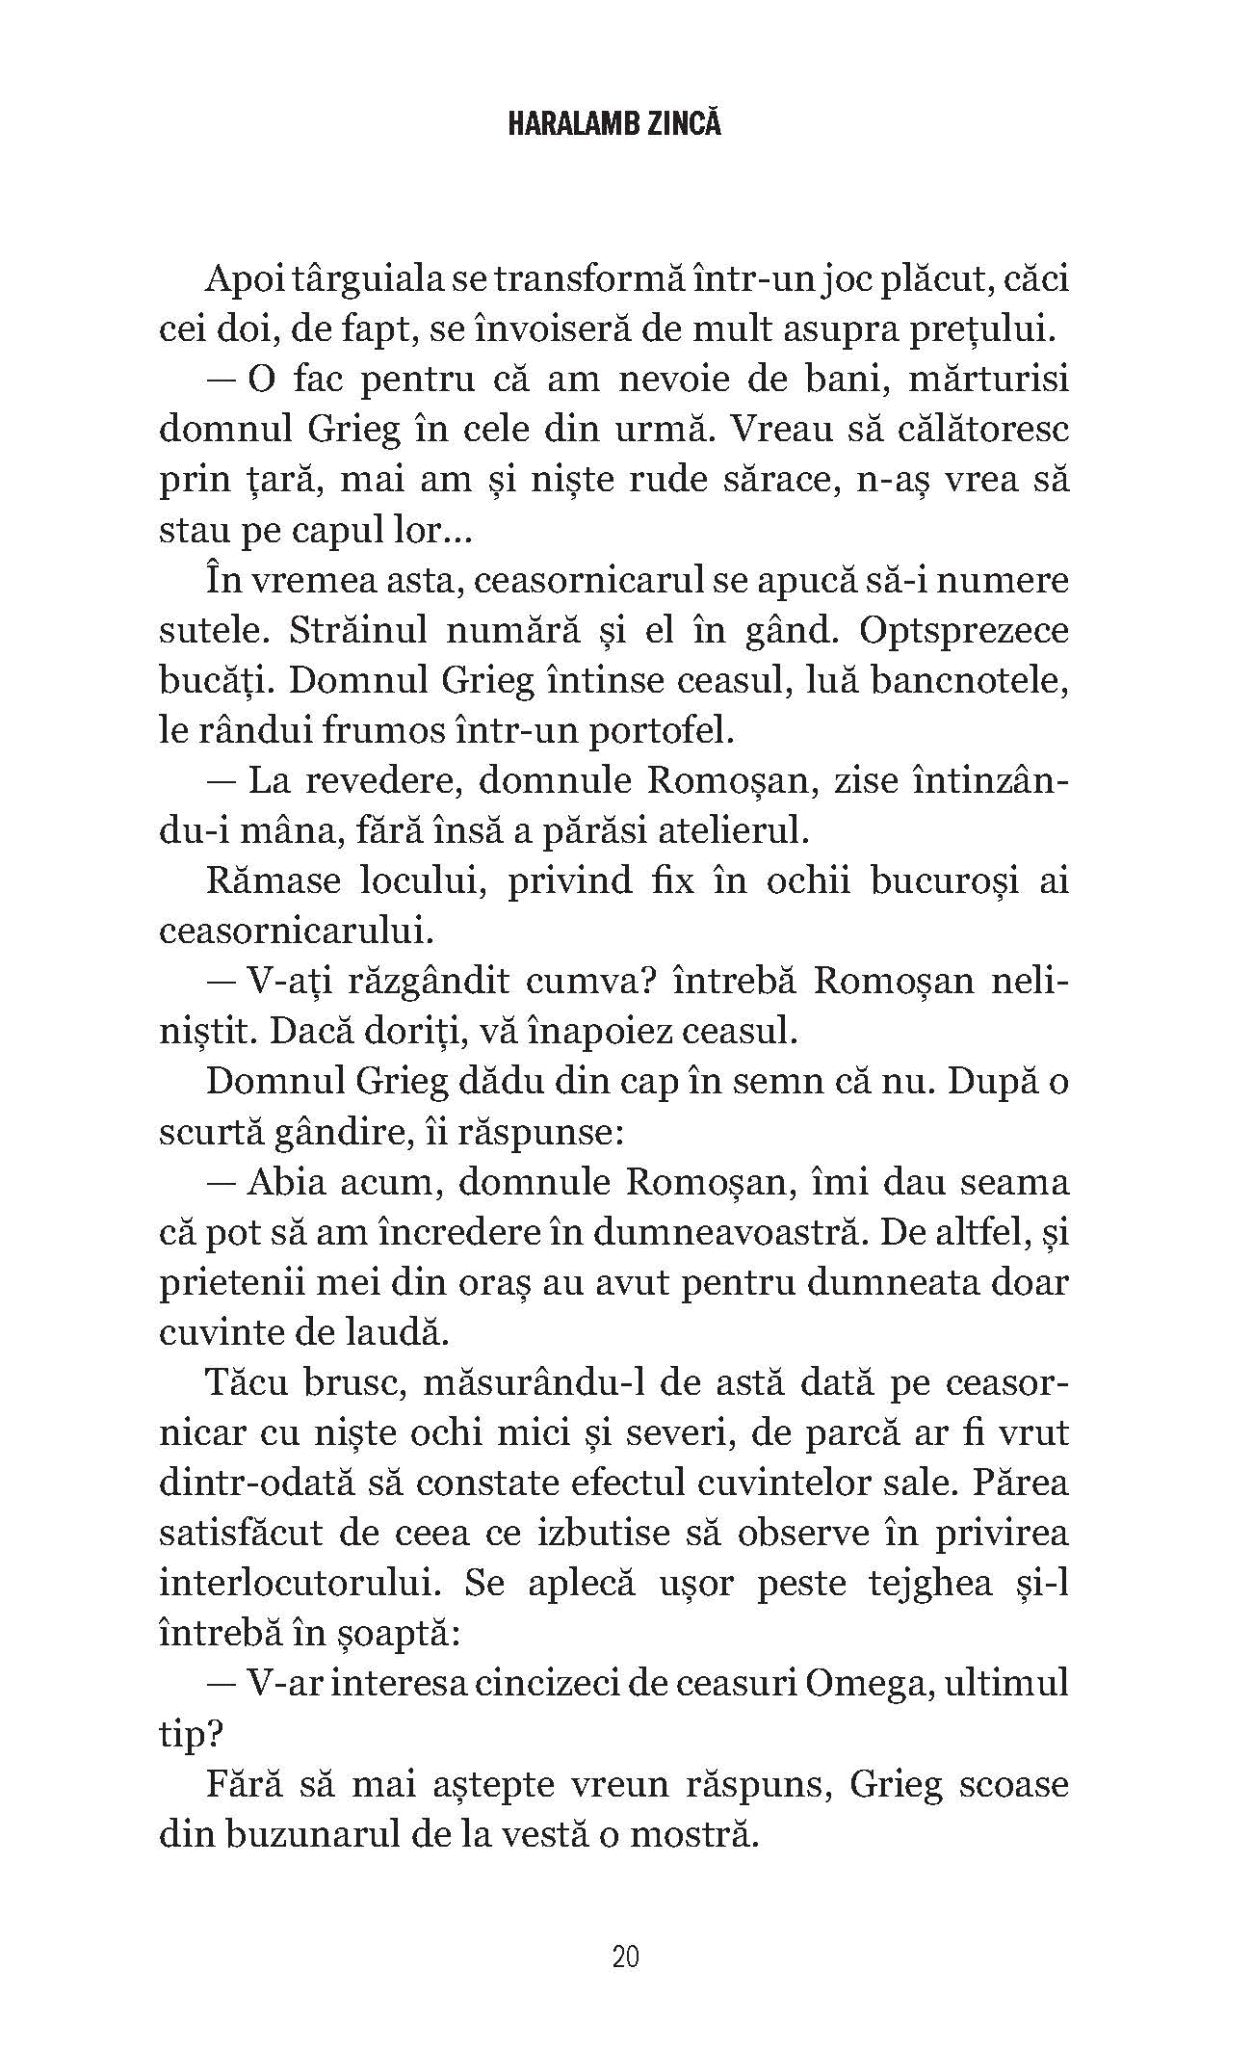 Ceasurile Sfantului Bartolomeu; Temerarul - Publisol.ro